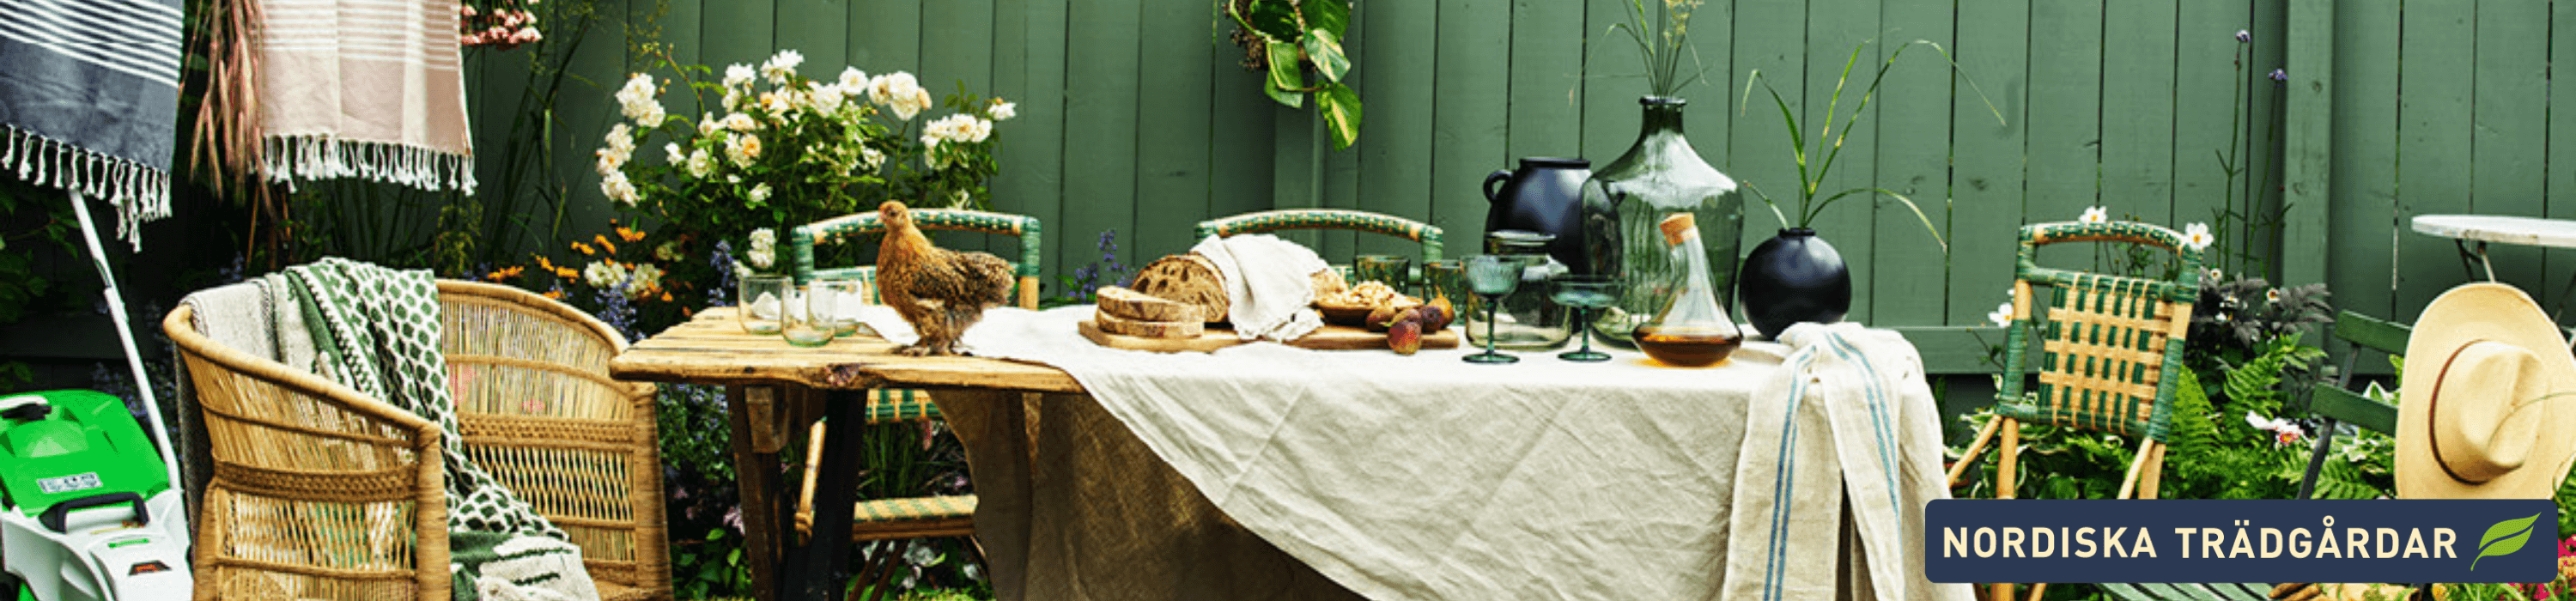 Bild på grönt staket med utemöbler och en tupp på bordet, samt nordiska trädgårdars logga